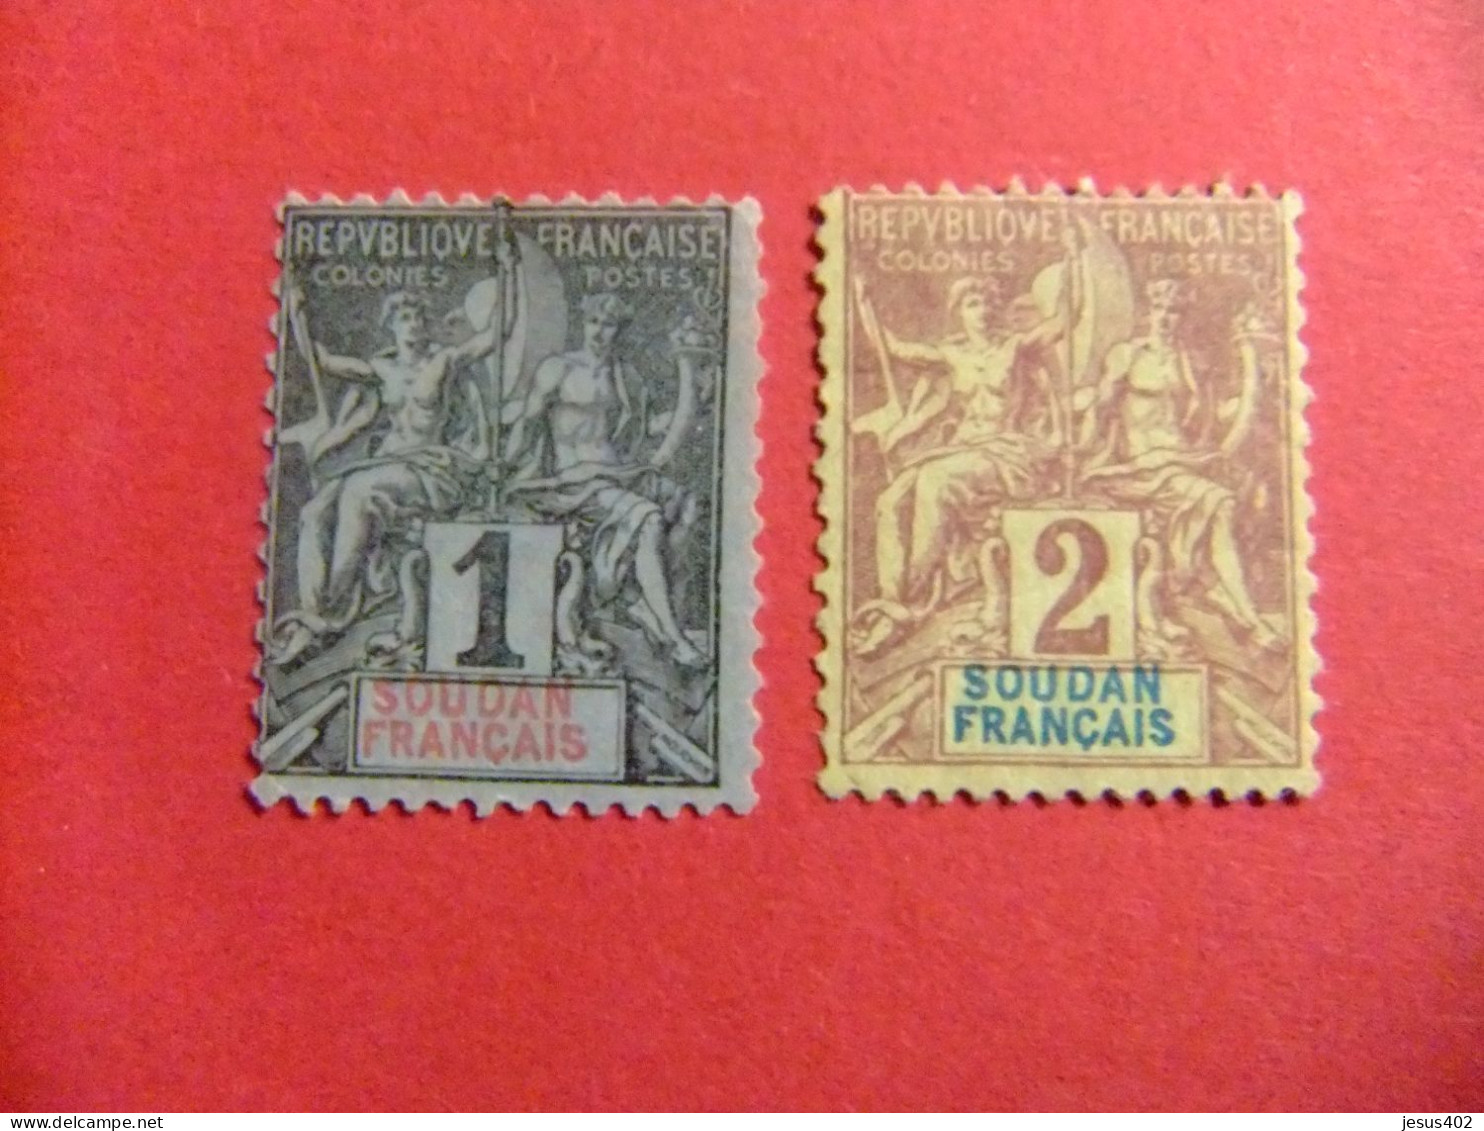 55 SUDAN - SOUDAN FRANCAISE 1894 / PAZ Y COMERCIO / YVERT 3 + 4 (*) - Unused Stamps